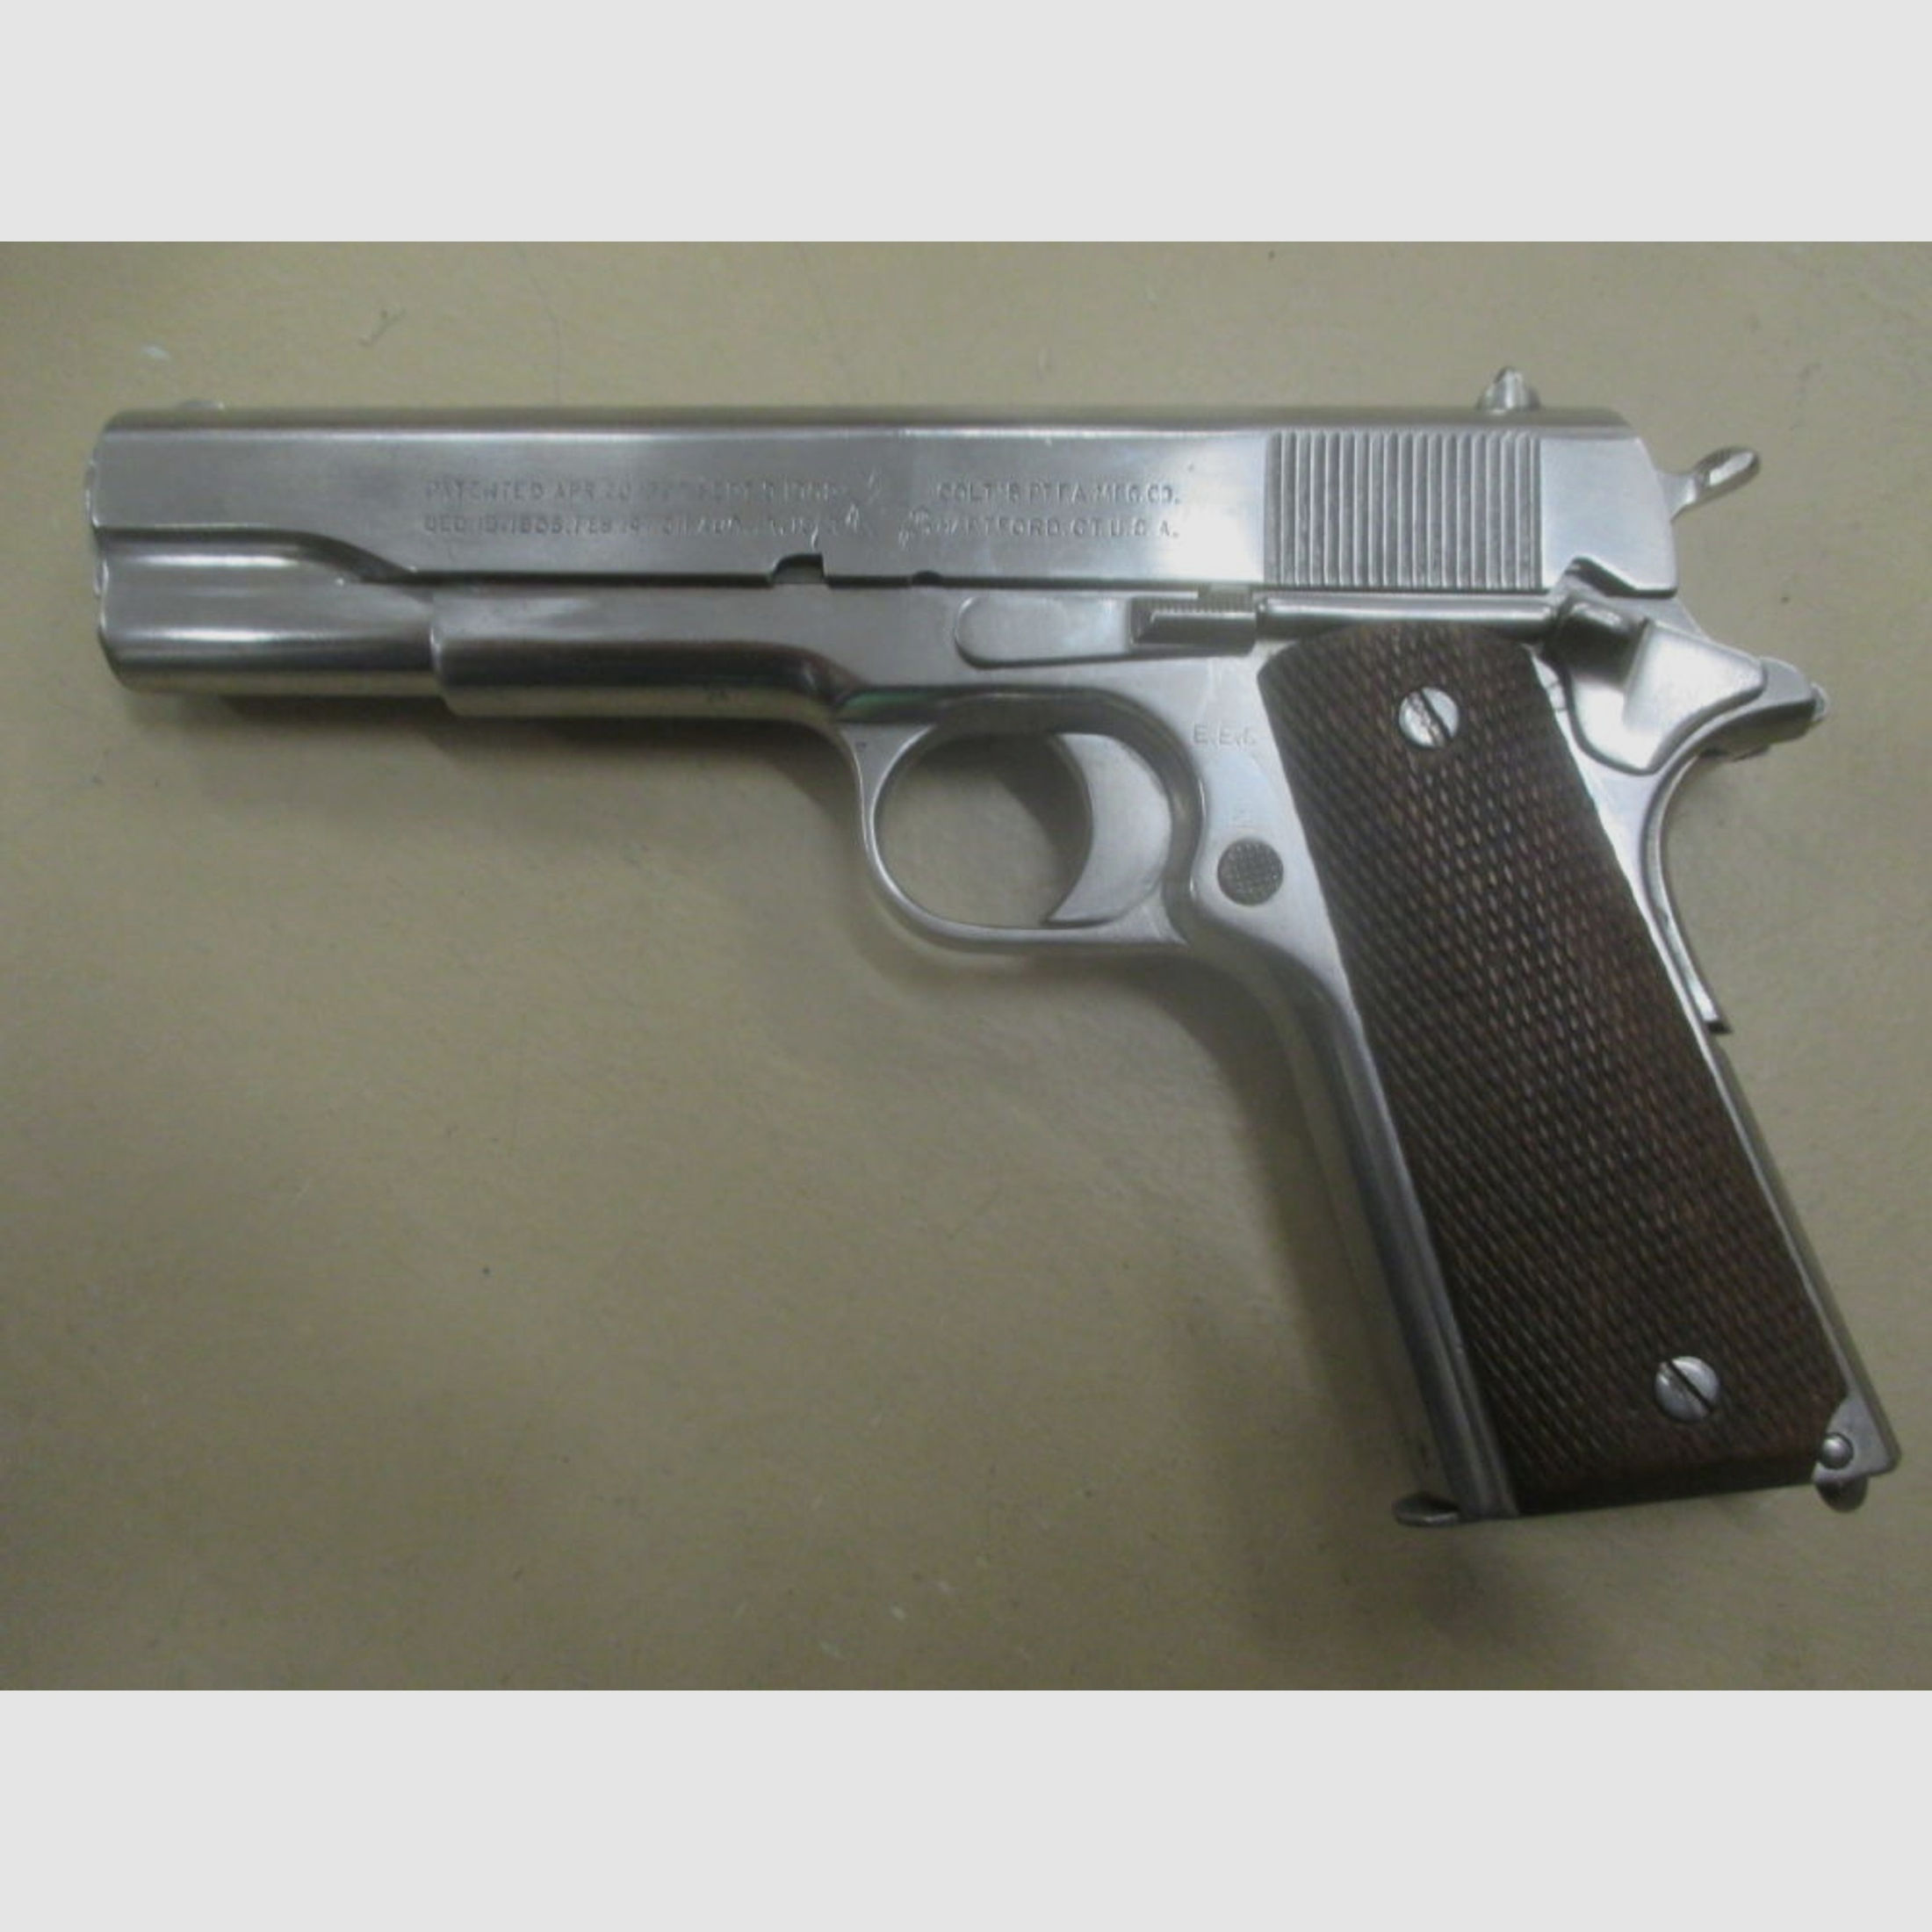 Pistole Colt 1911 -nicht A1- aus 1917 mit 4-stelliger Nummer	 1911